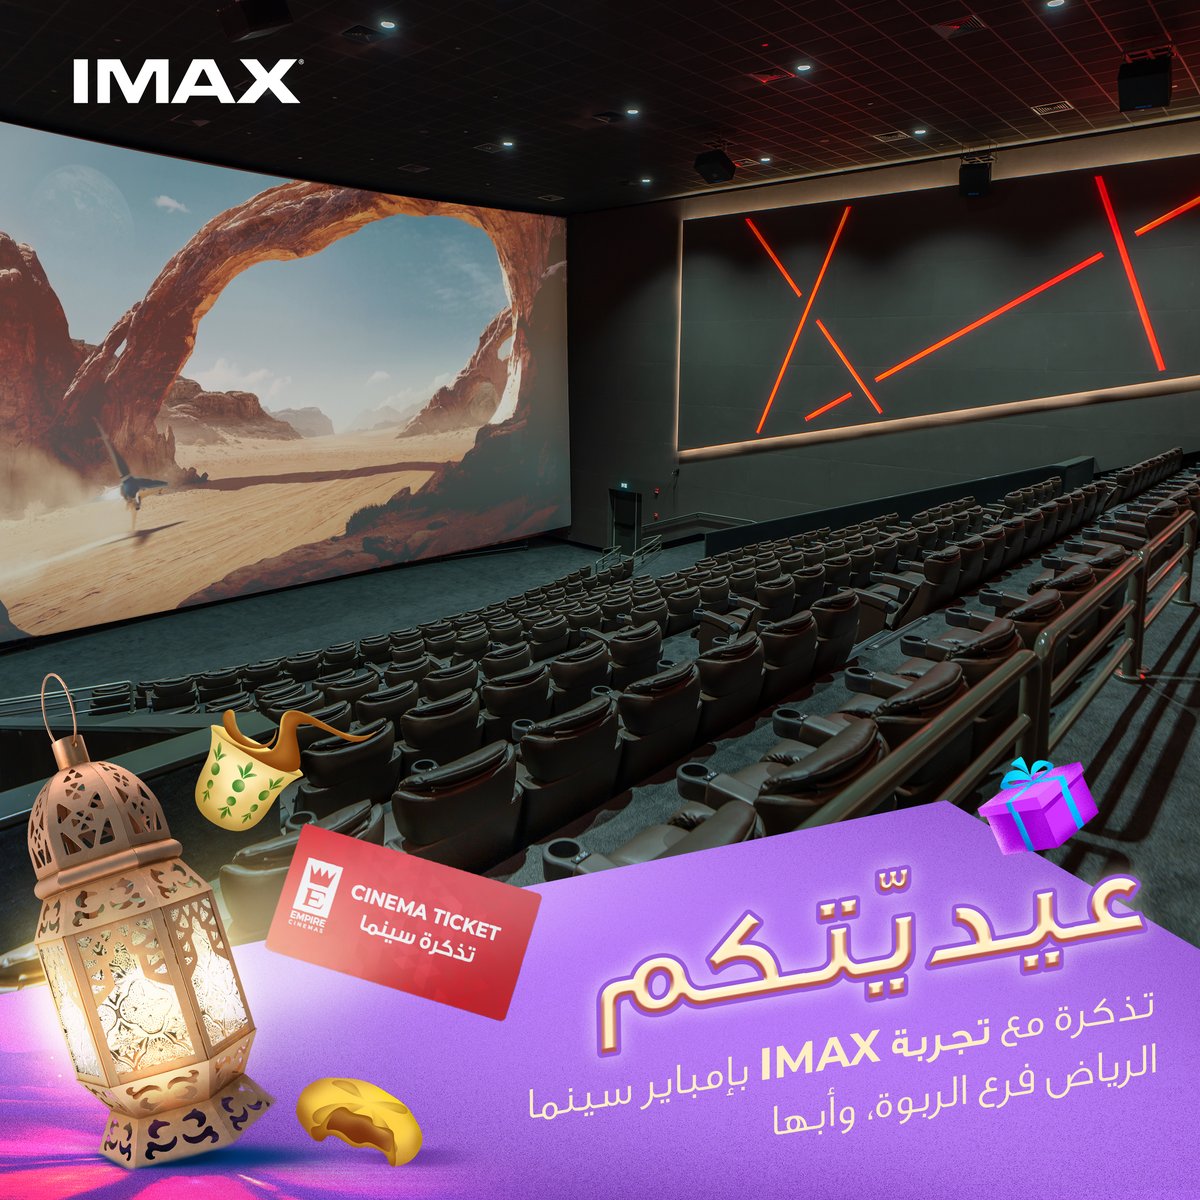 هديّتكم آيماكس! تذكرة IMAX في إمباير سينما الرياض فرع الربوة، وأبها. 🎥🎟️ كل اللي عليك تسويه عشان تدخل السحب: - تابع حسابنا - منشن ٣ من أصحابك - سوي لايك على هذا البوست #empirecinemas #KSA #إمبايرـسينما #السعودية